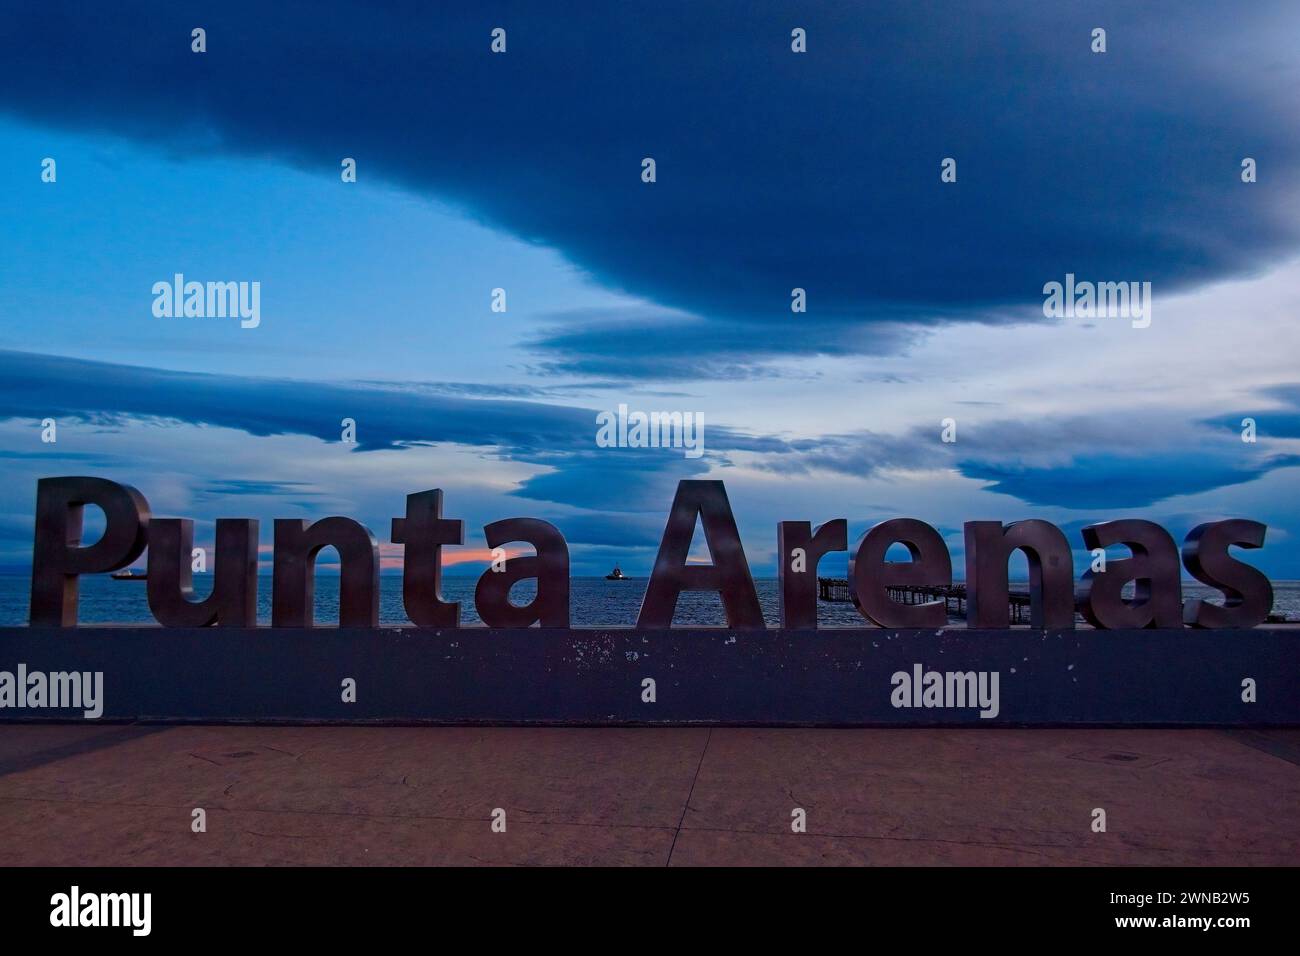 Lumière du soir sur le panneau métallique Punta Arenas près de la rive. Le panneau commémore 500 ans depuis la découverte du détroit de Magellan. Banque D'Images